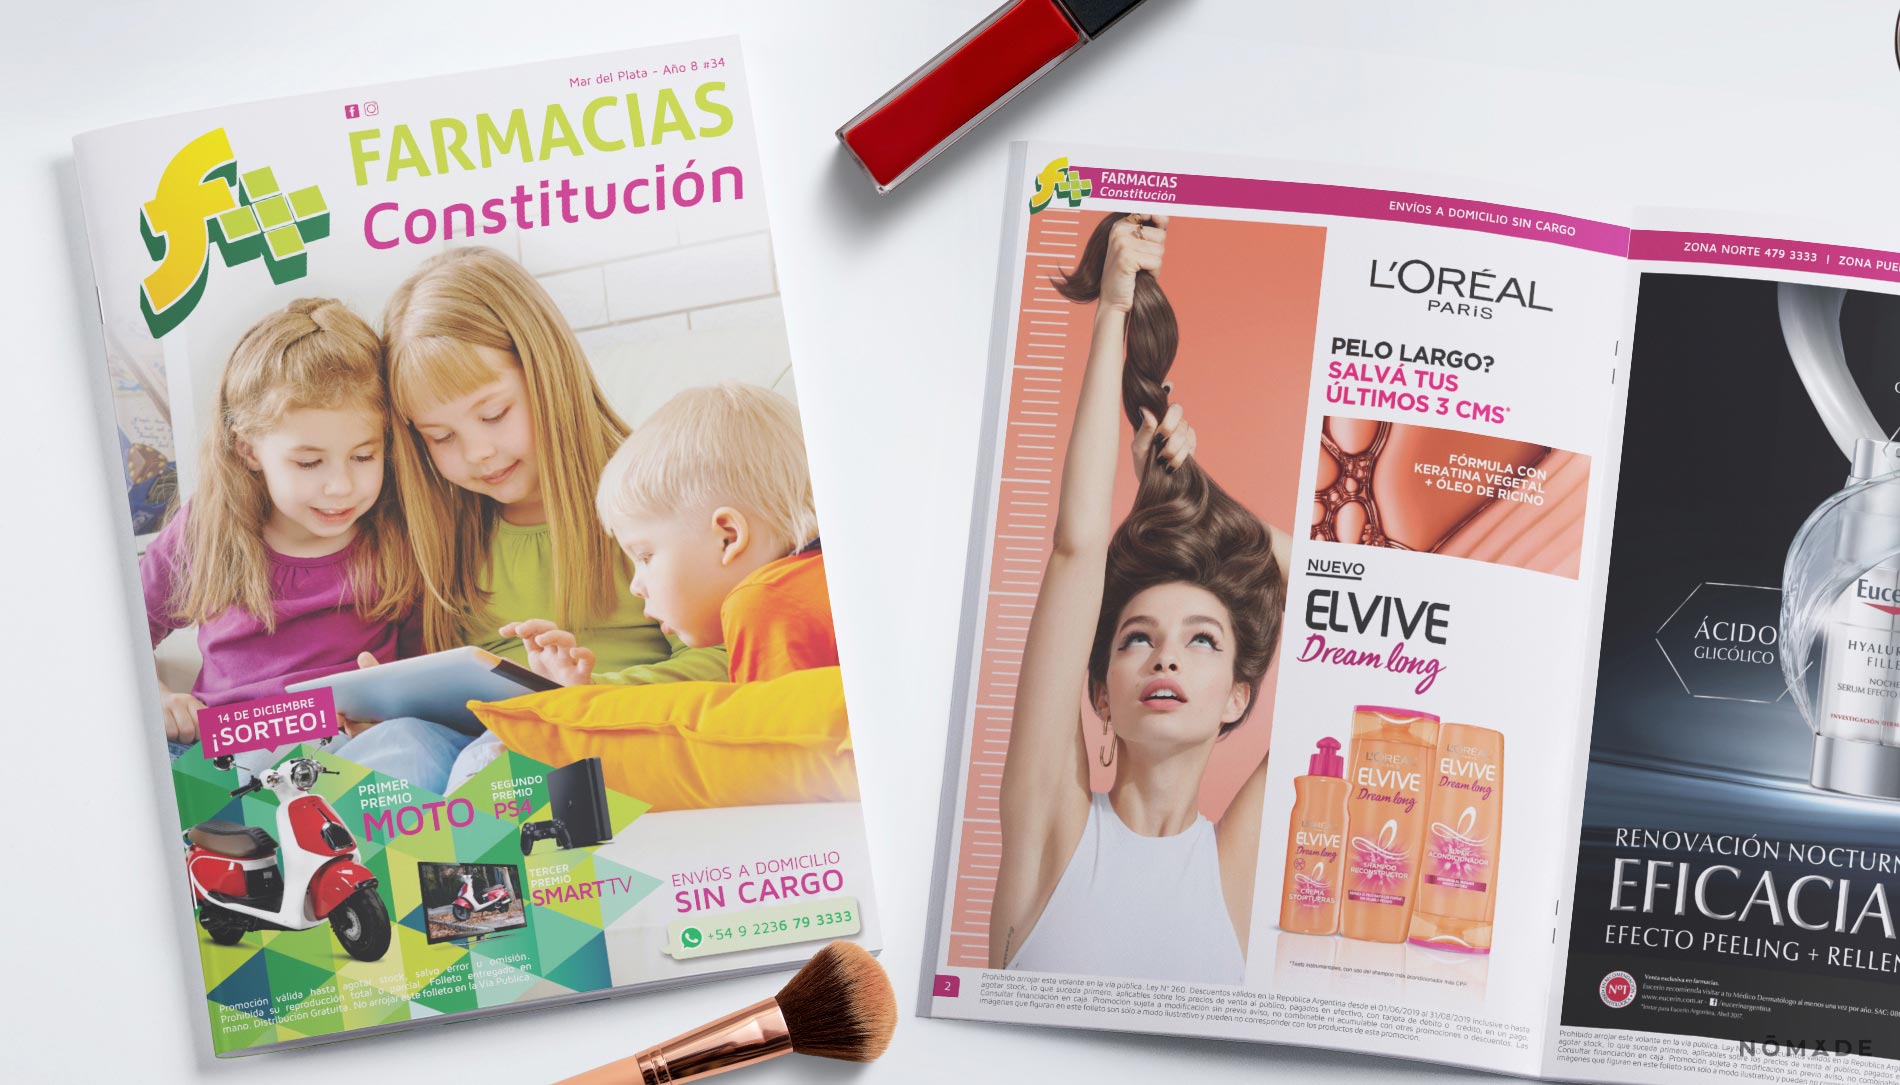 Agencia Nómade - Farmacias Constitución